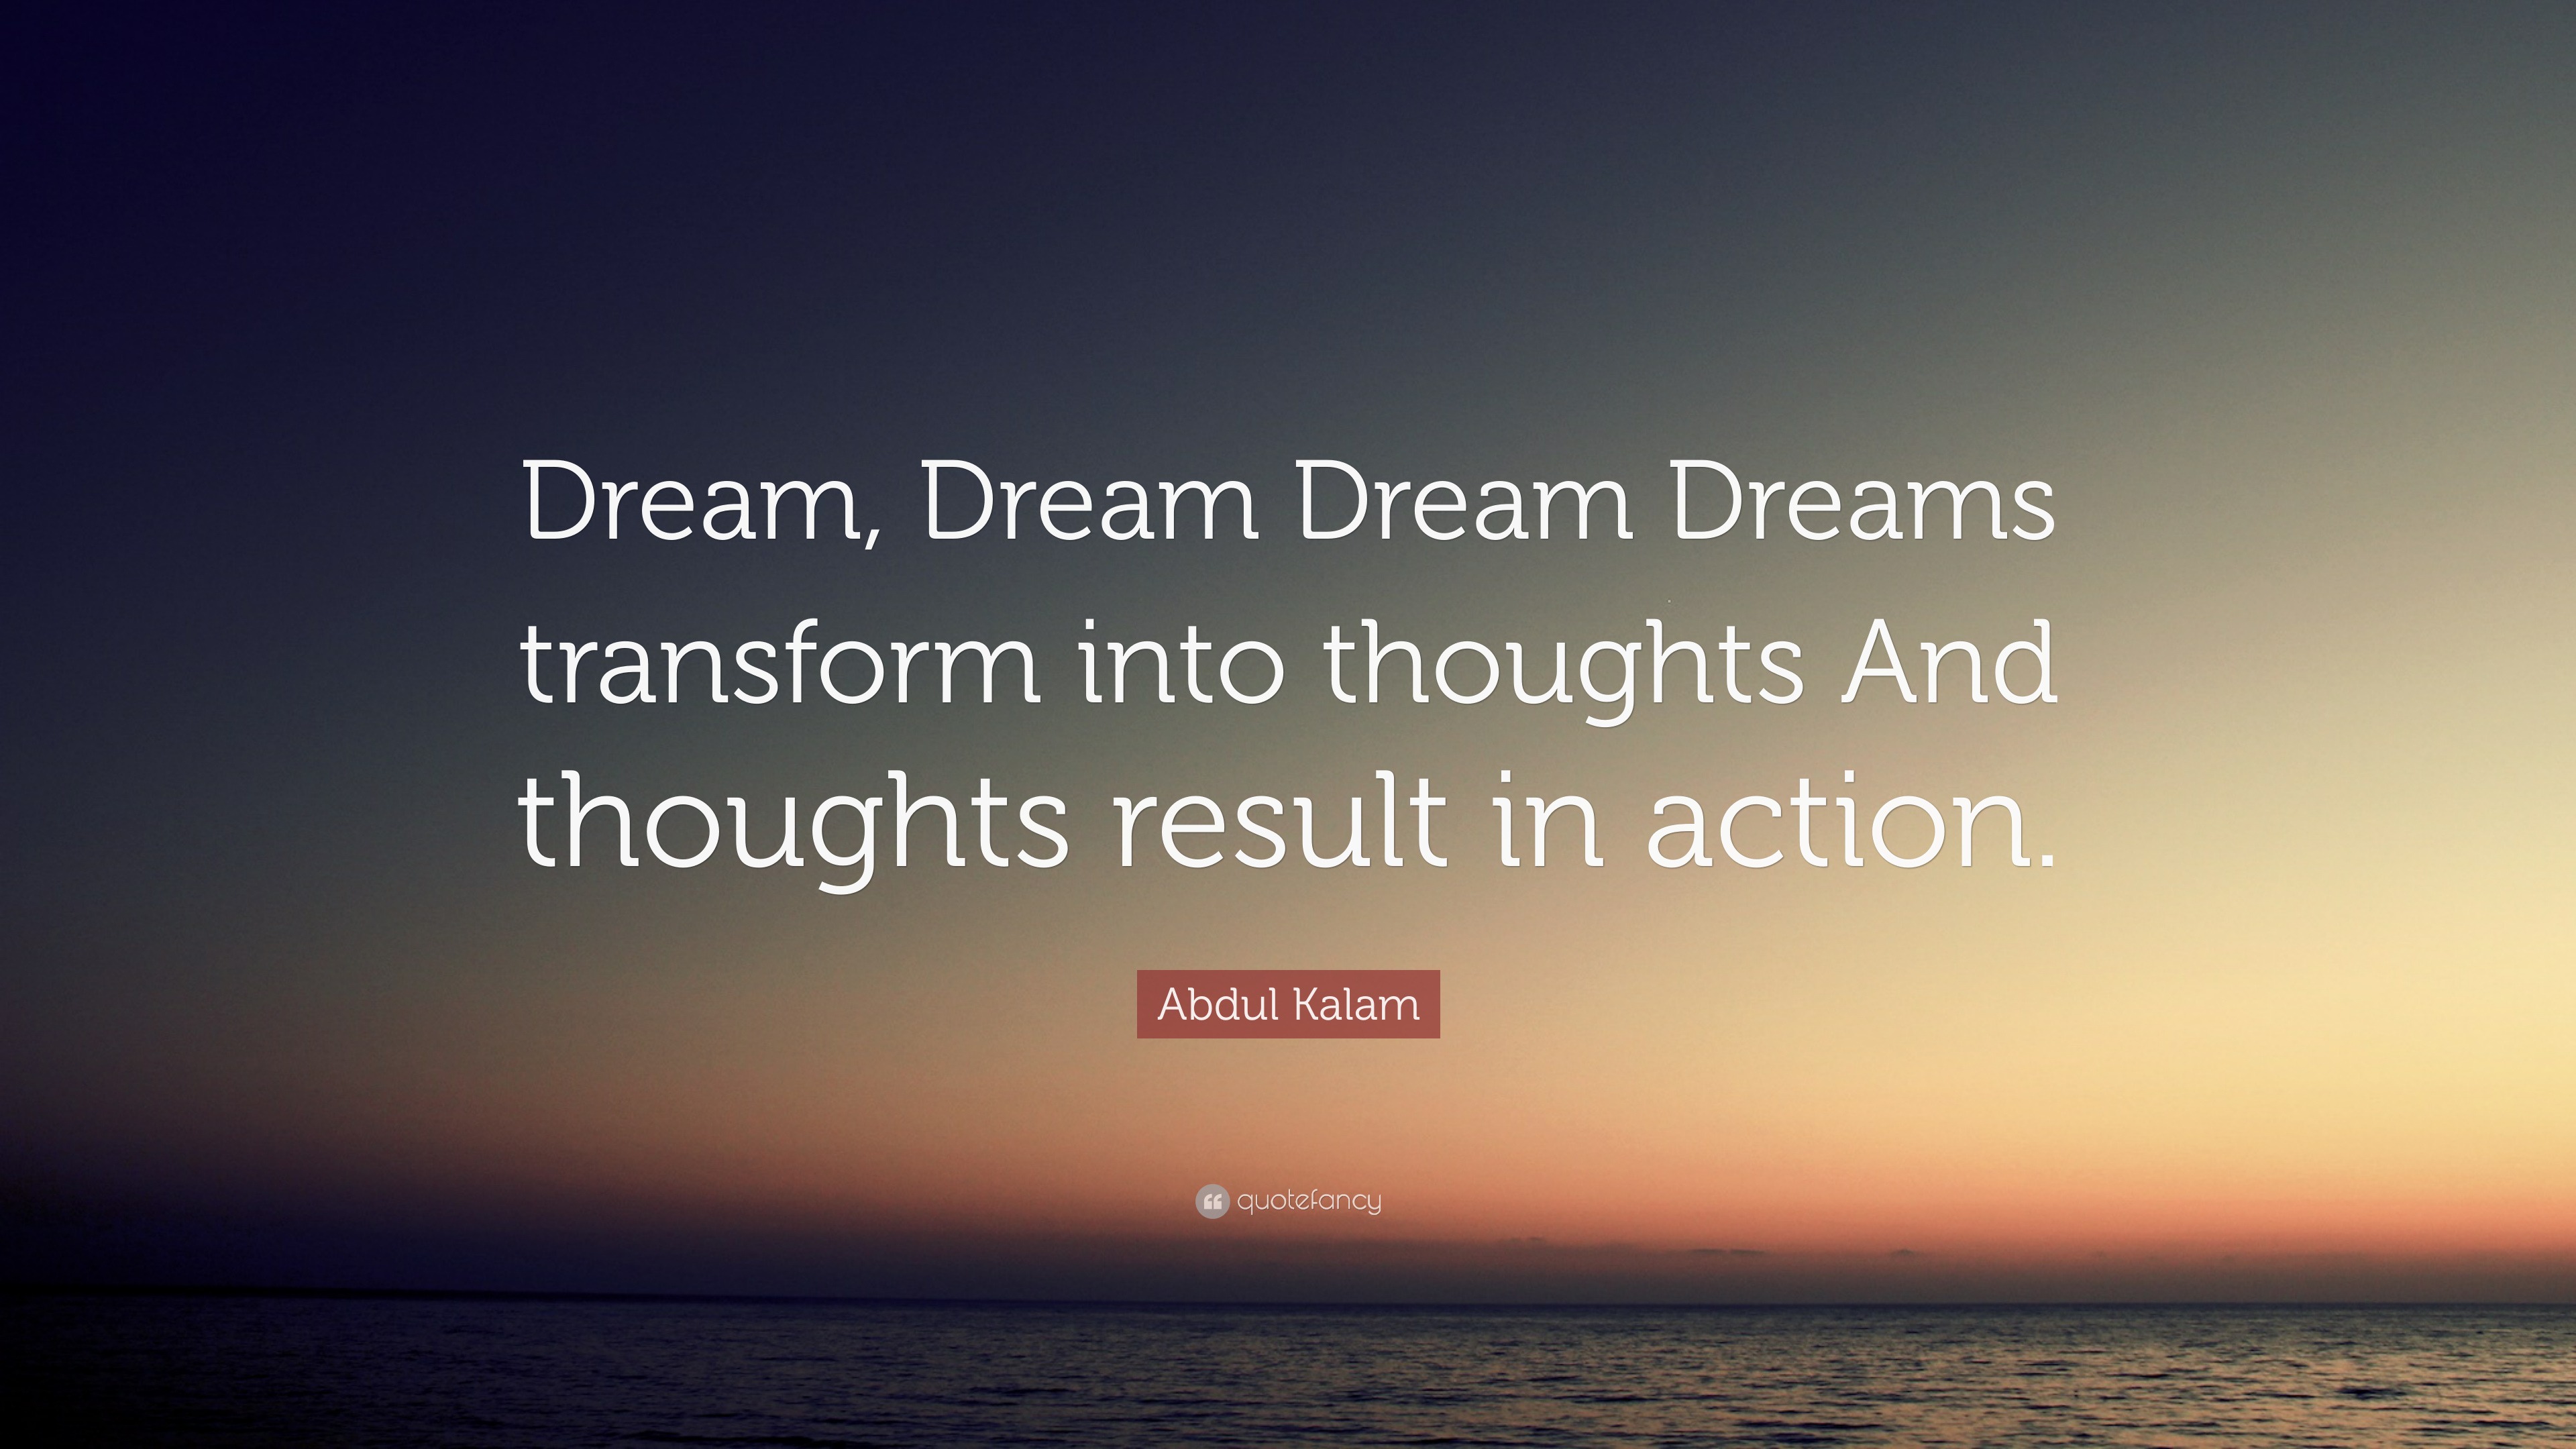 Abdul Kalam Quote: “Dream, Dream Dream Dreams transform into thoughts ...